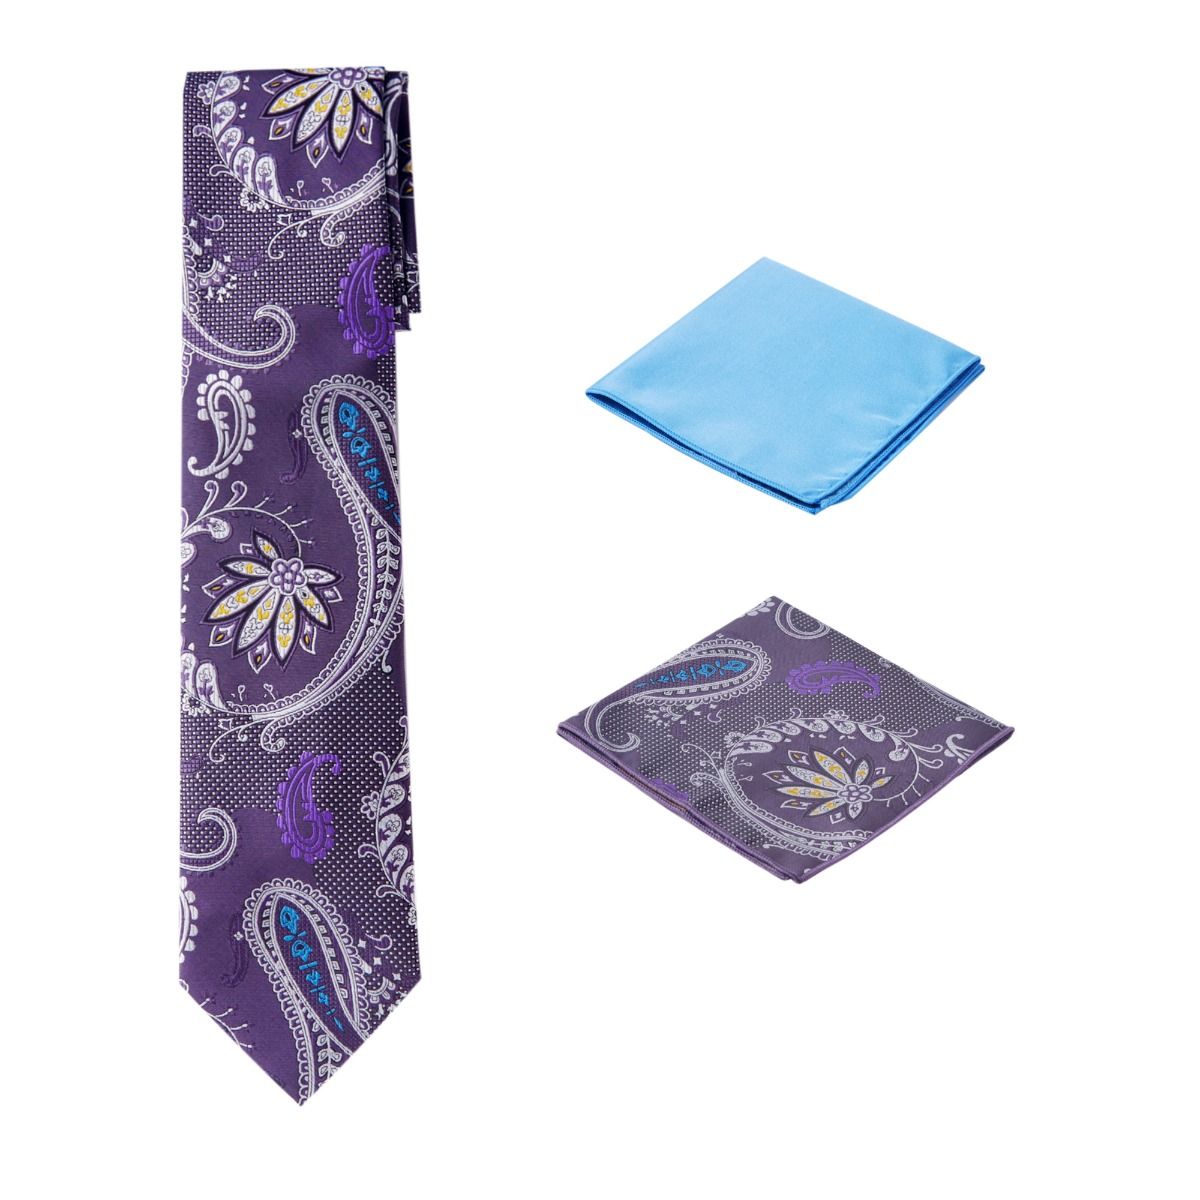 Men's Unique Printed Paisley Flower Purple Themed Necktie w/ 2 handkerchiefs  